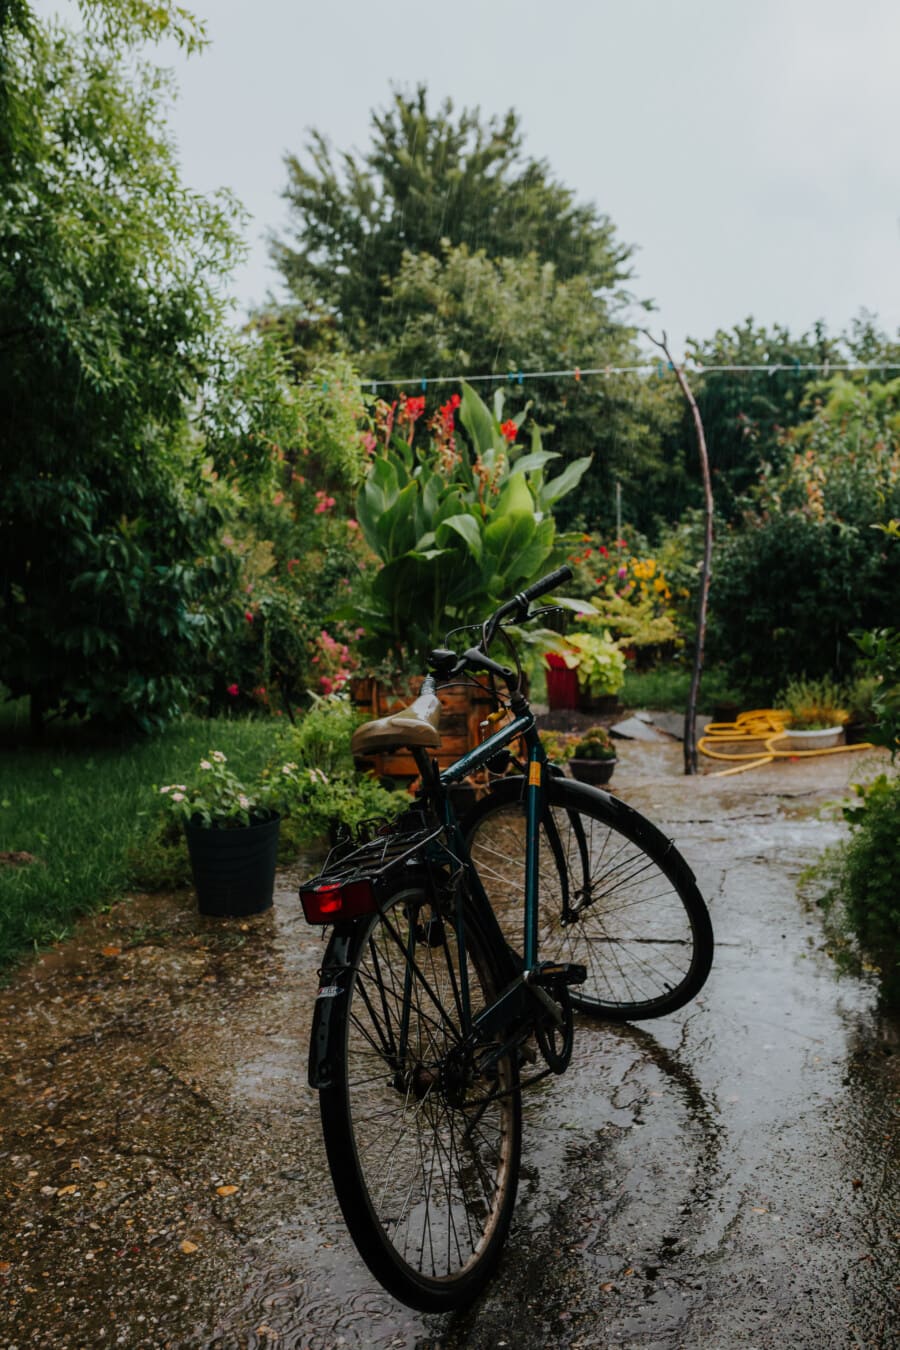 велосипедов, цветочный сад, двор, дождь, мокрый, сезон дождей, велосипед, колесо, дерево, цветок